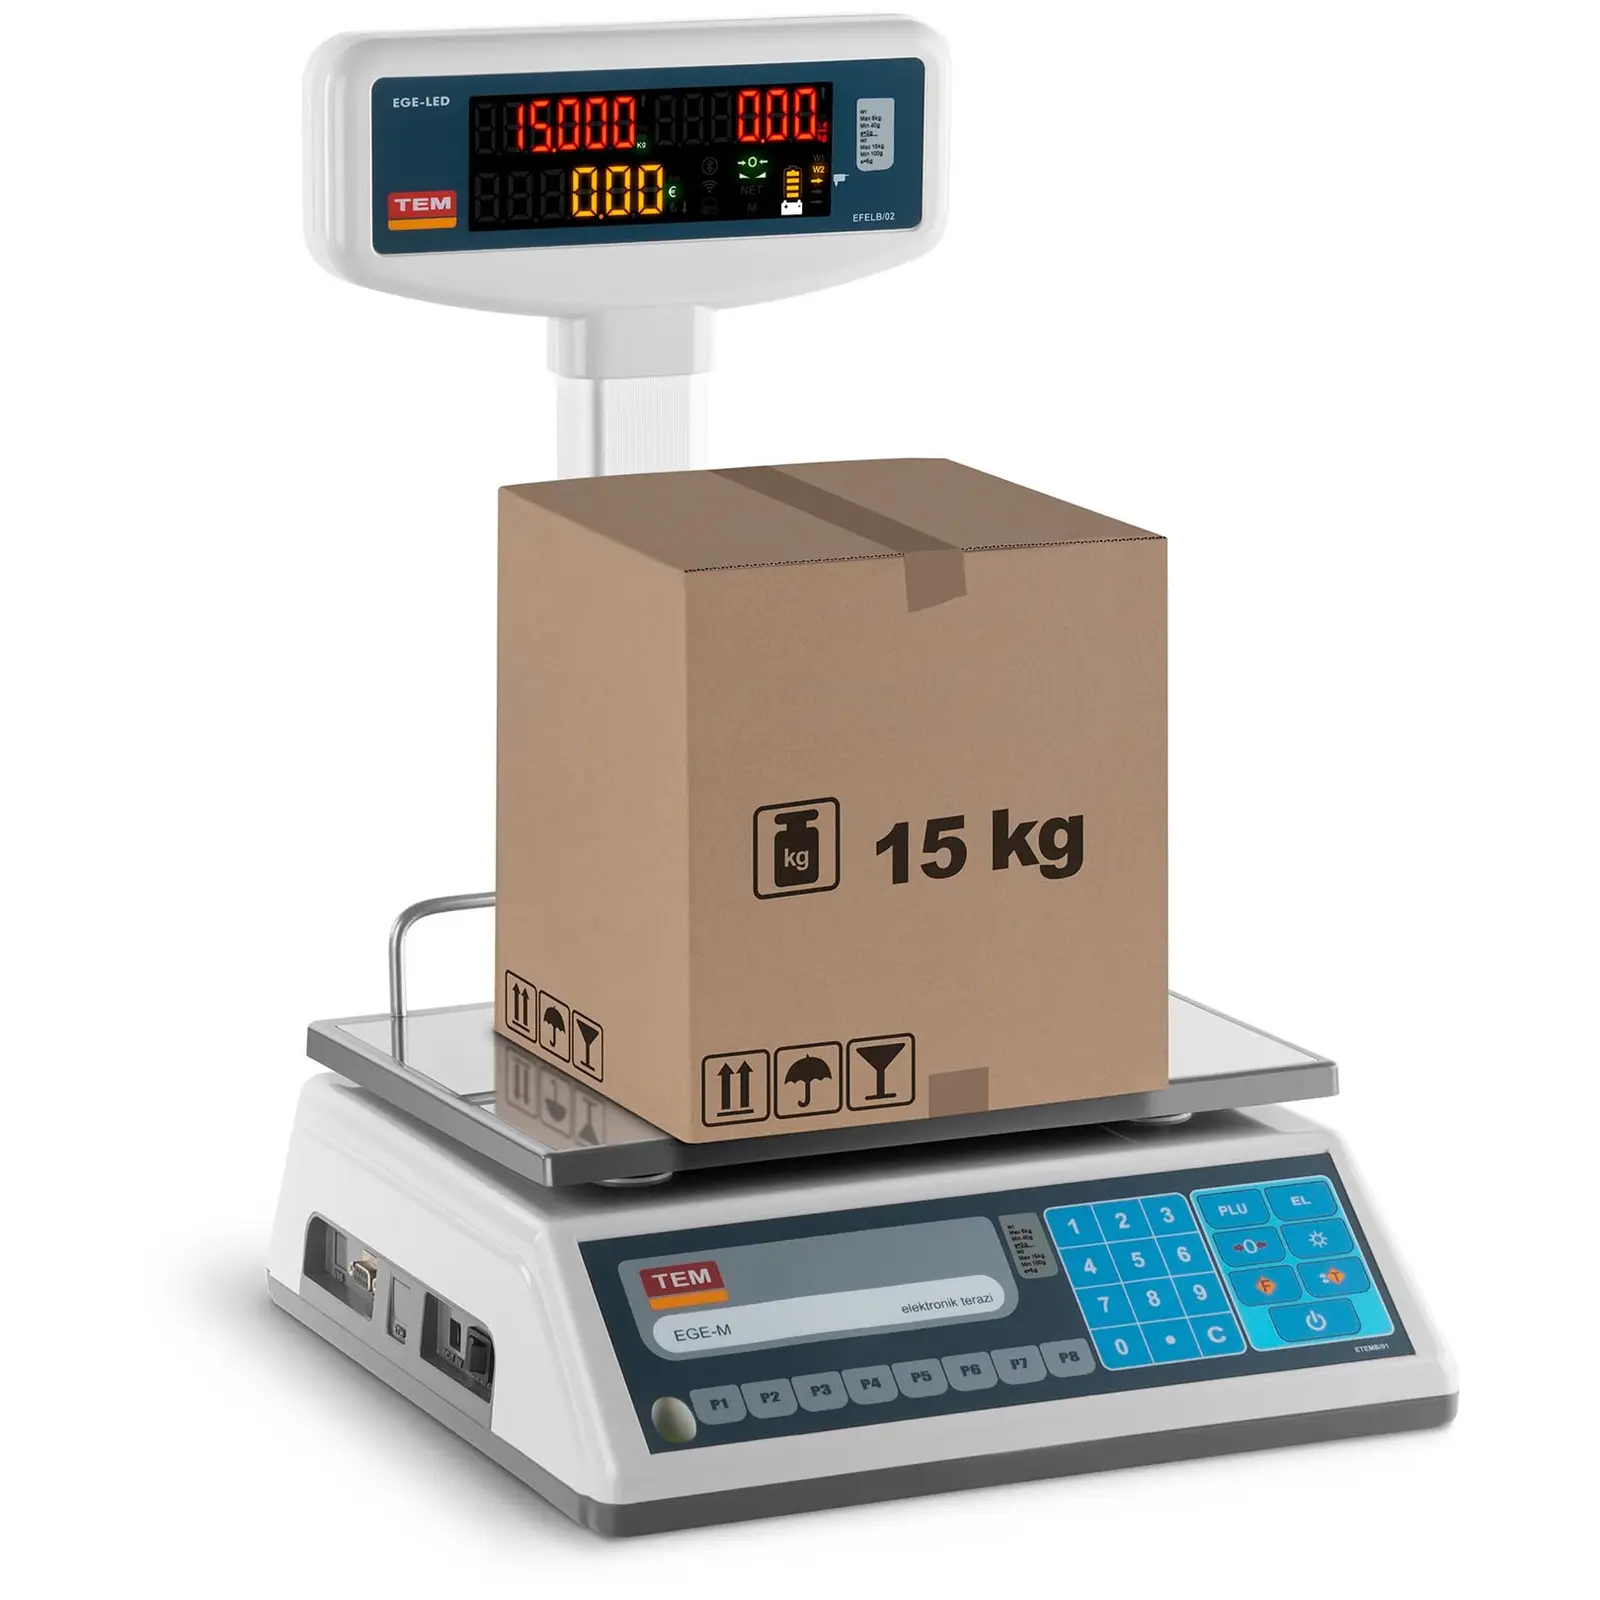 Obchodní váha s LED displejem - 6 kg/2 g - 15 kg/5 g